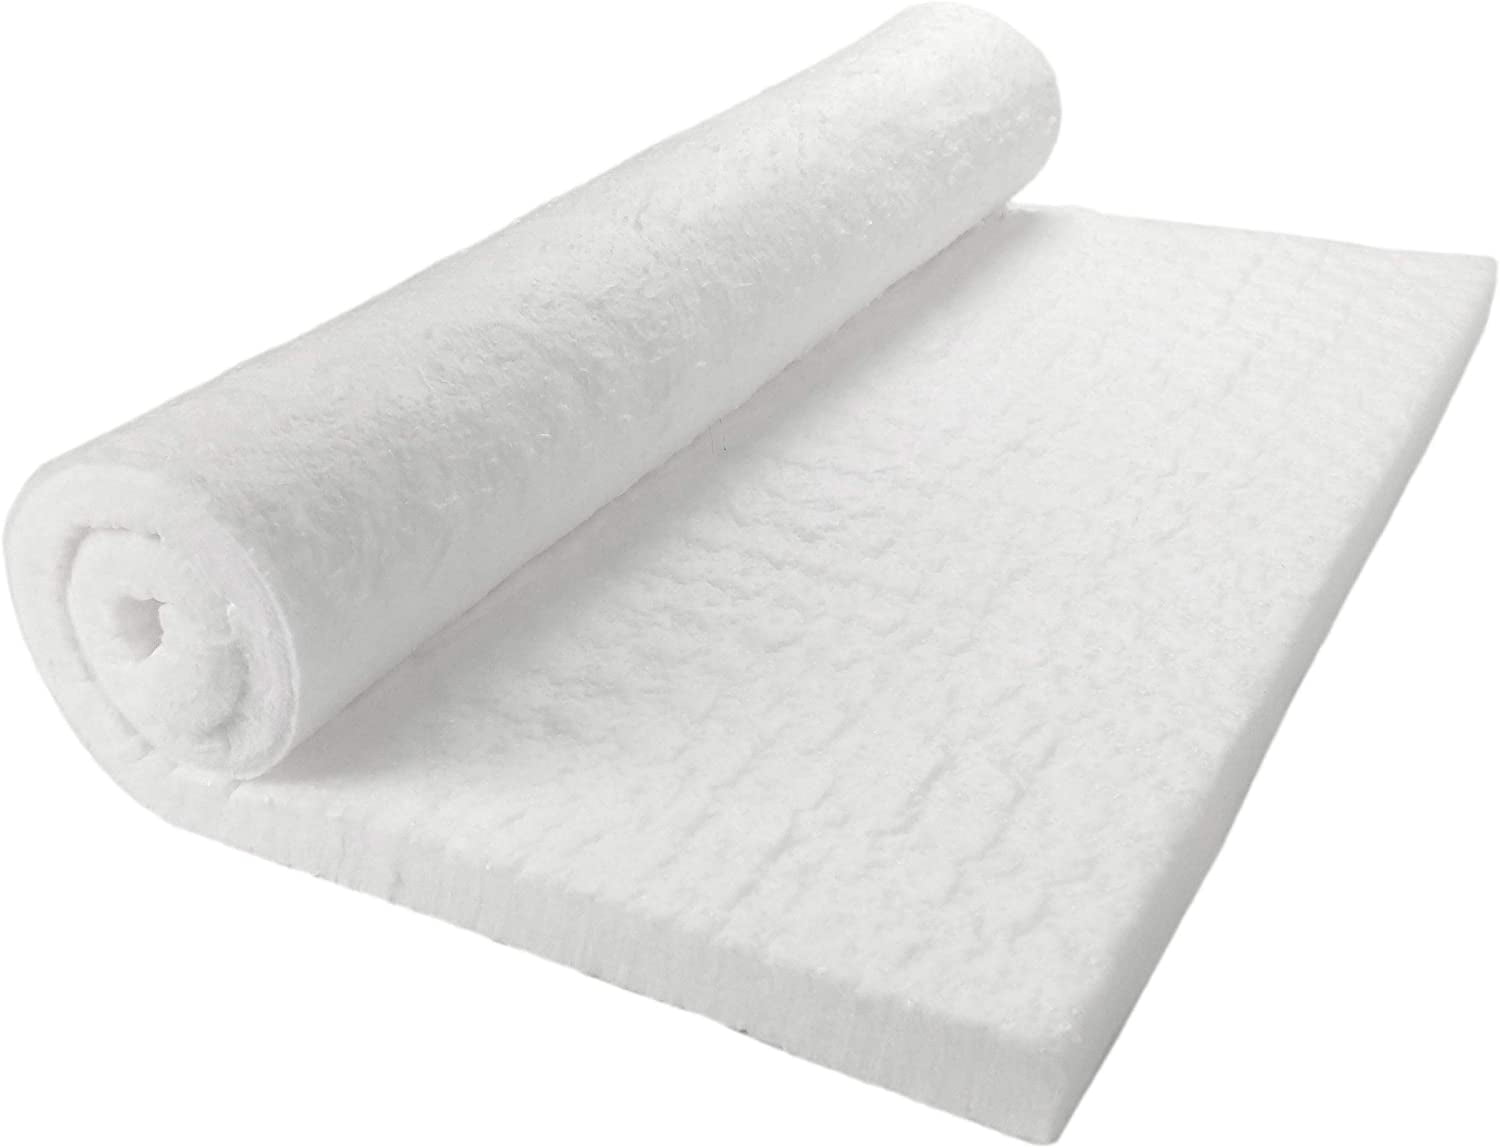 1/2” X 4” X 50' 8# MORGAN KAOWOOL 2300 - Ceramic Fiber Blankets